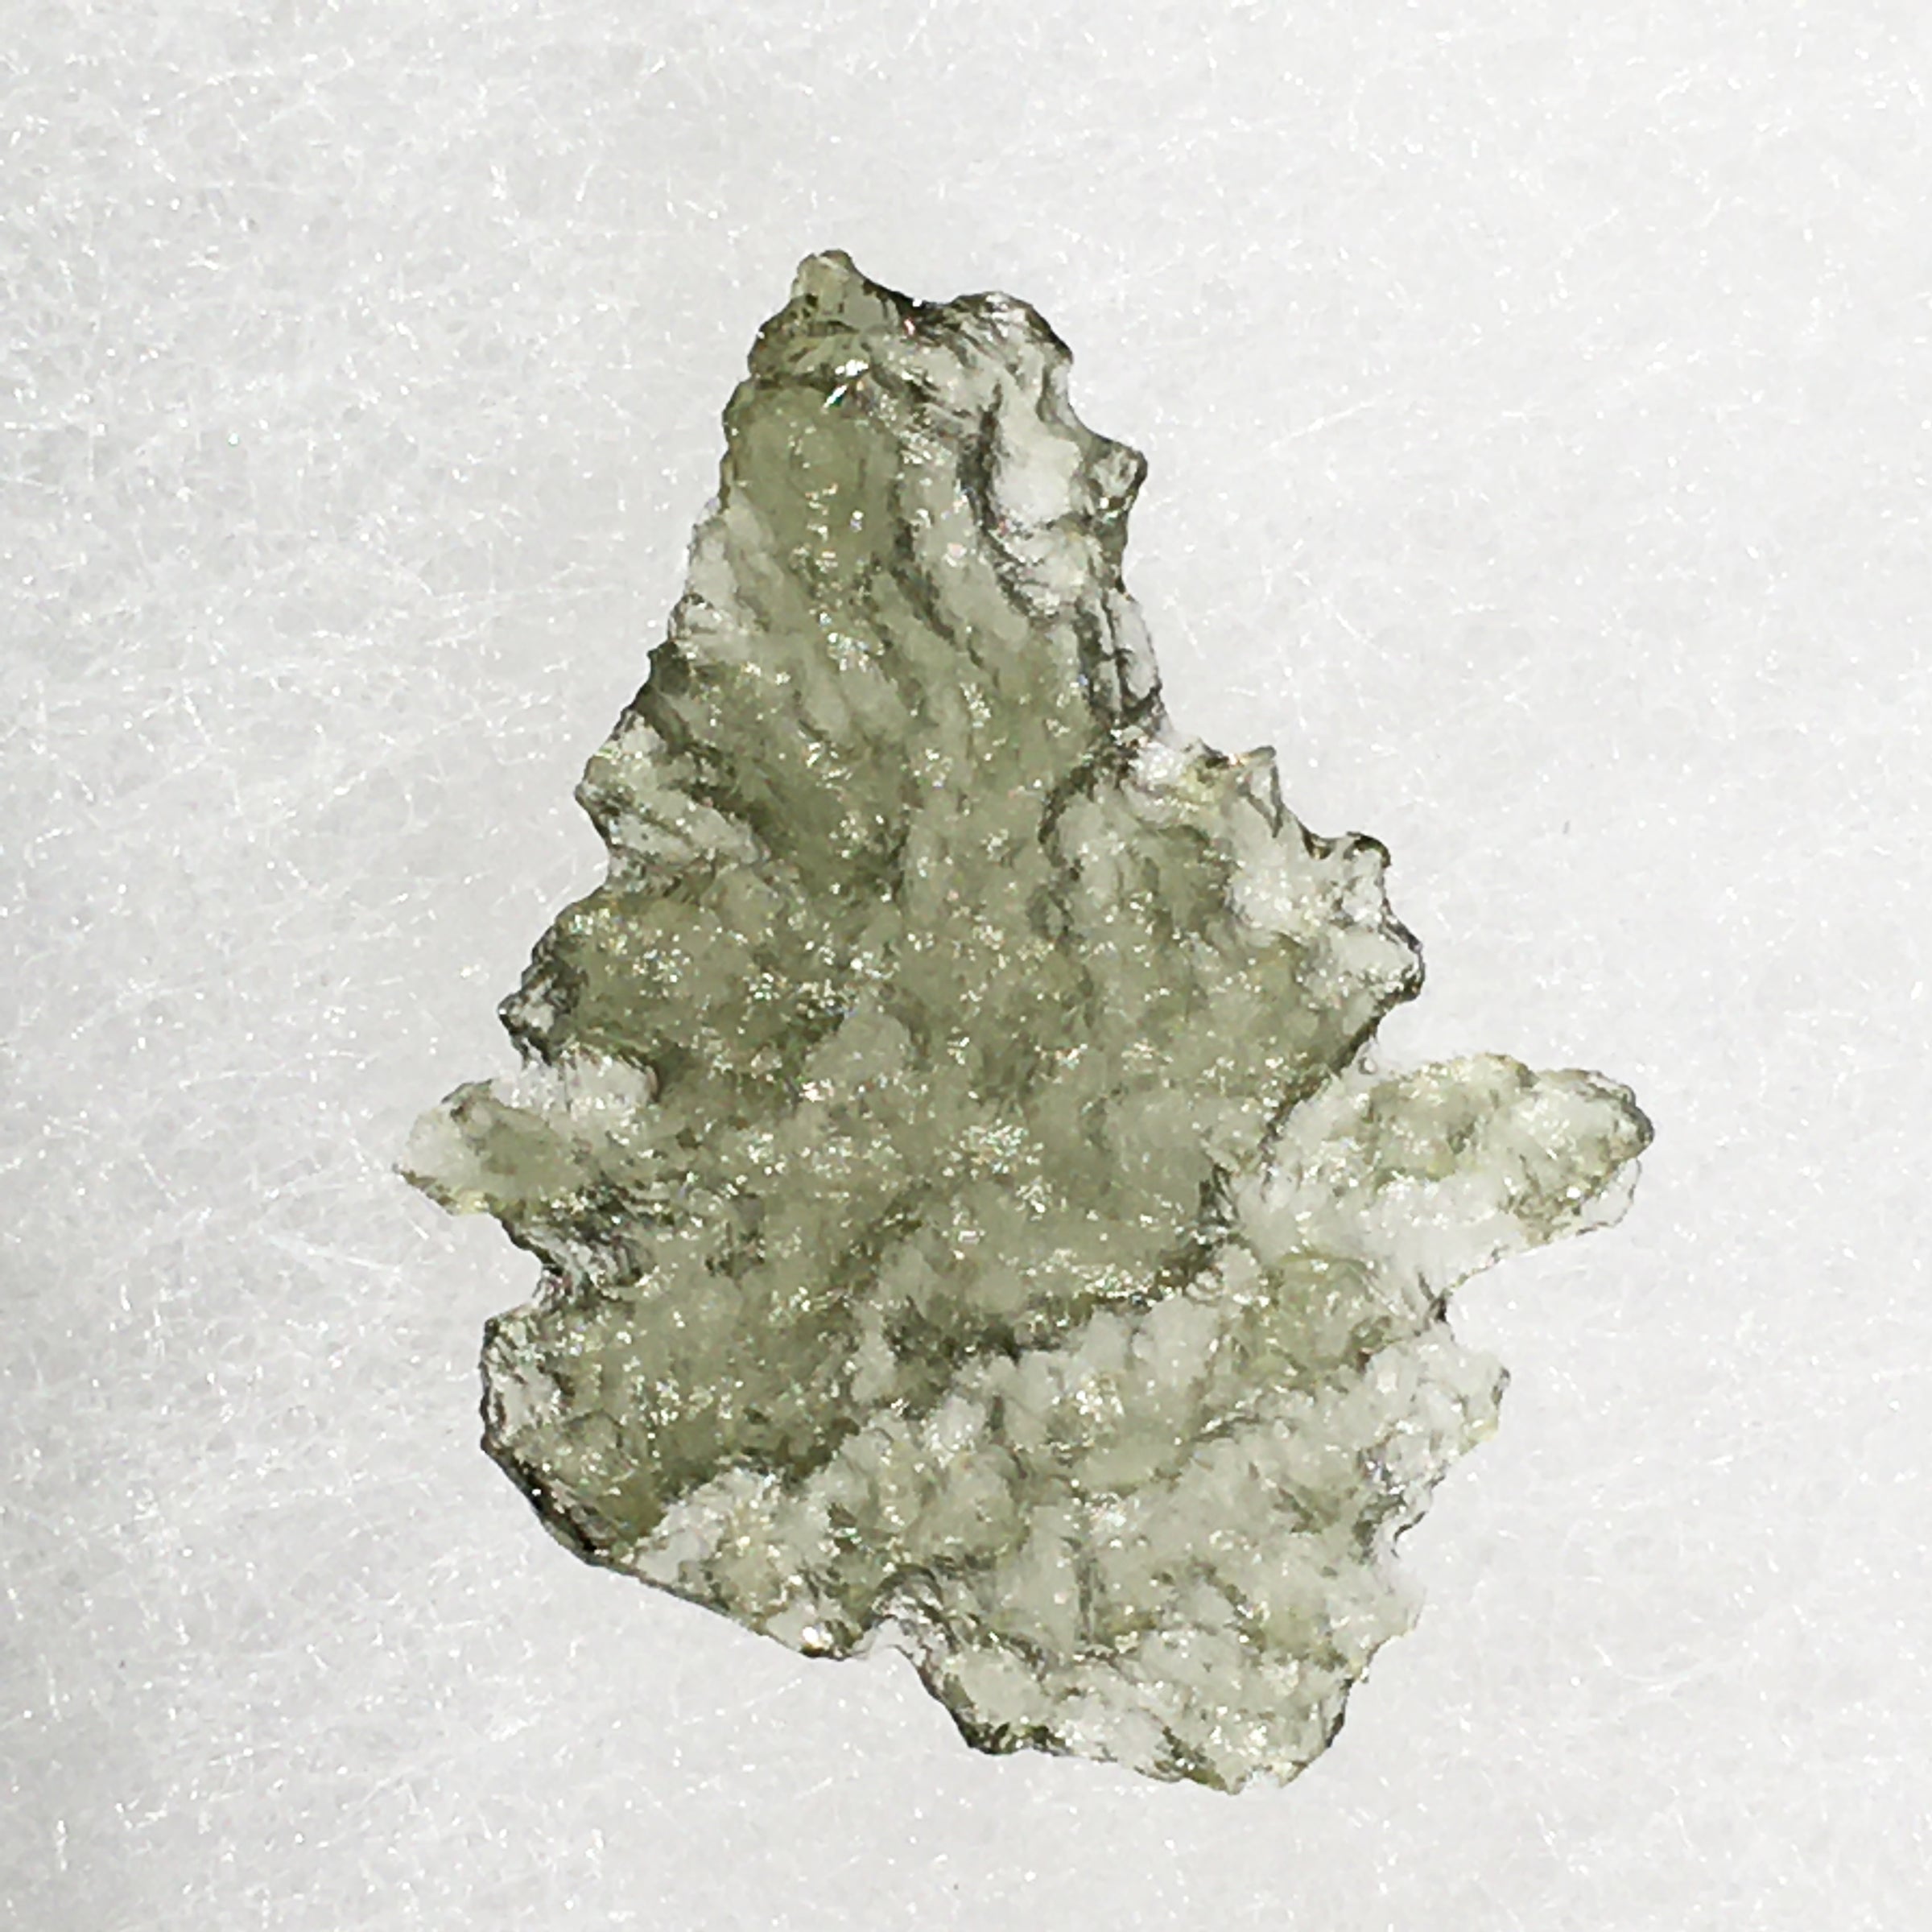 Besednice Moldavite Genuine Certified 0.7 grams BM70-Moldavite Life